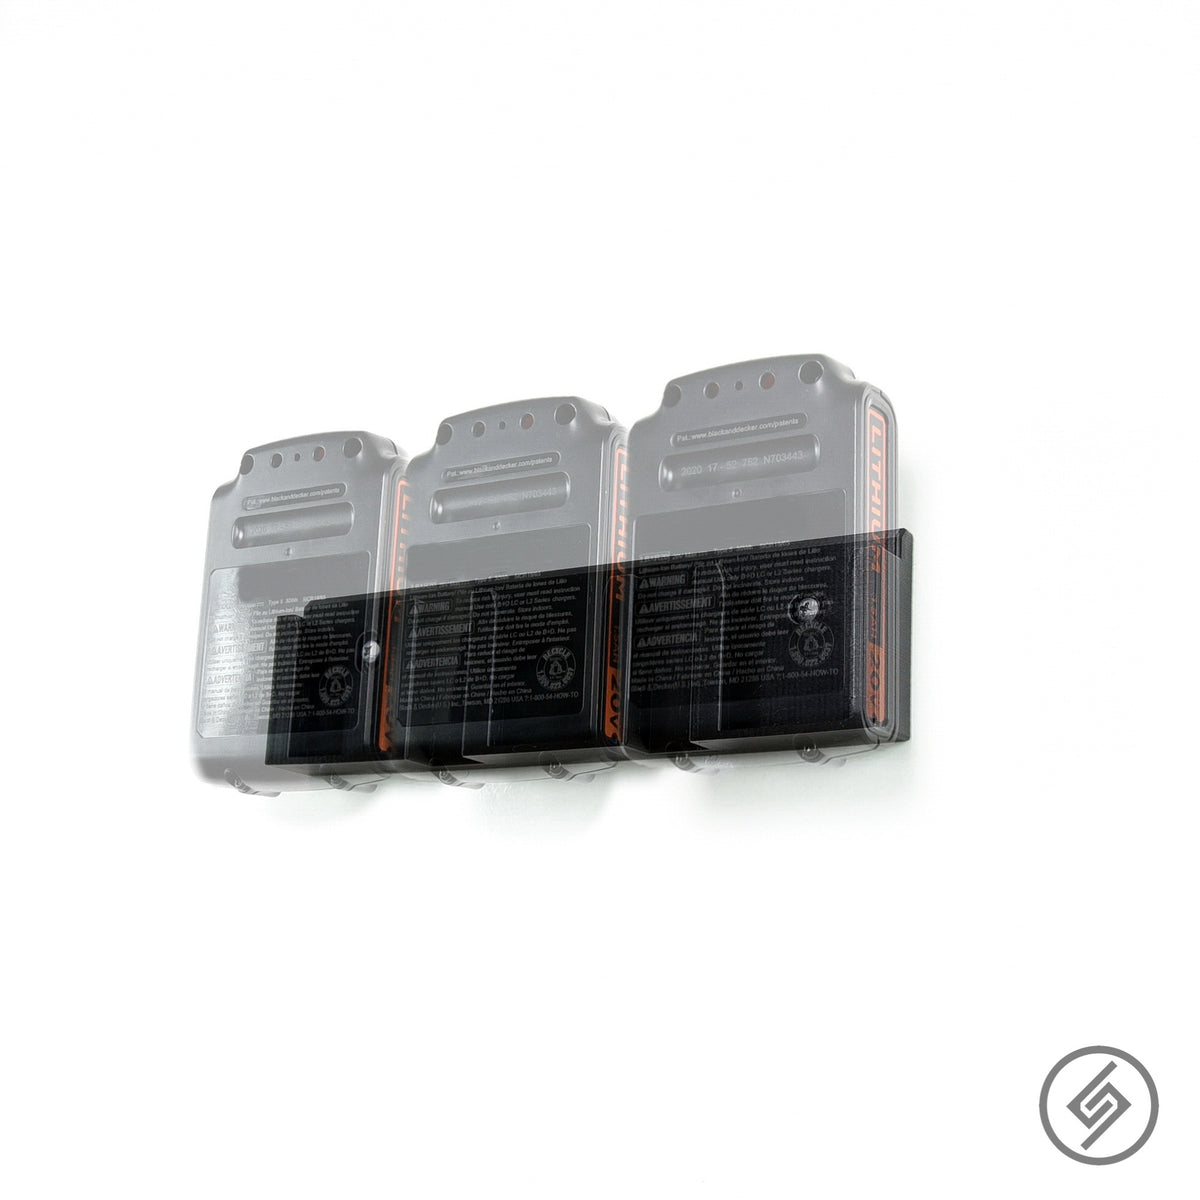 2 Pack** Black & Decker 20V Battery Slot Tool Holder Mount